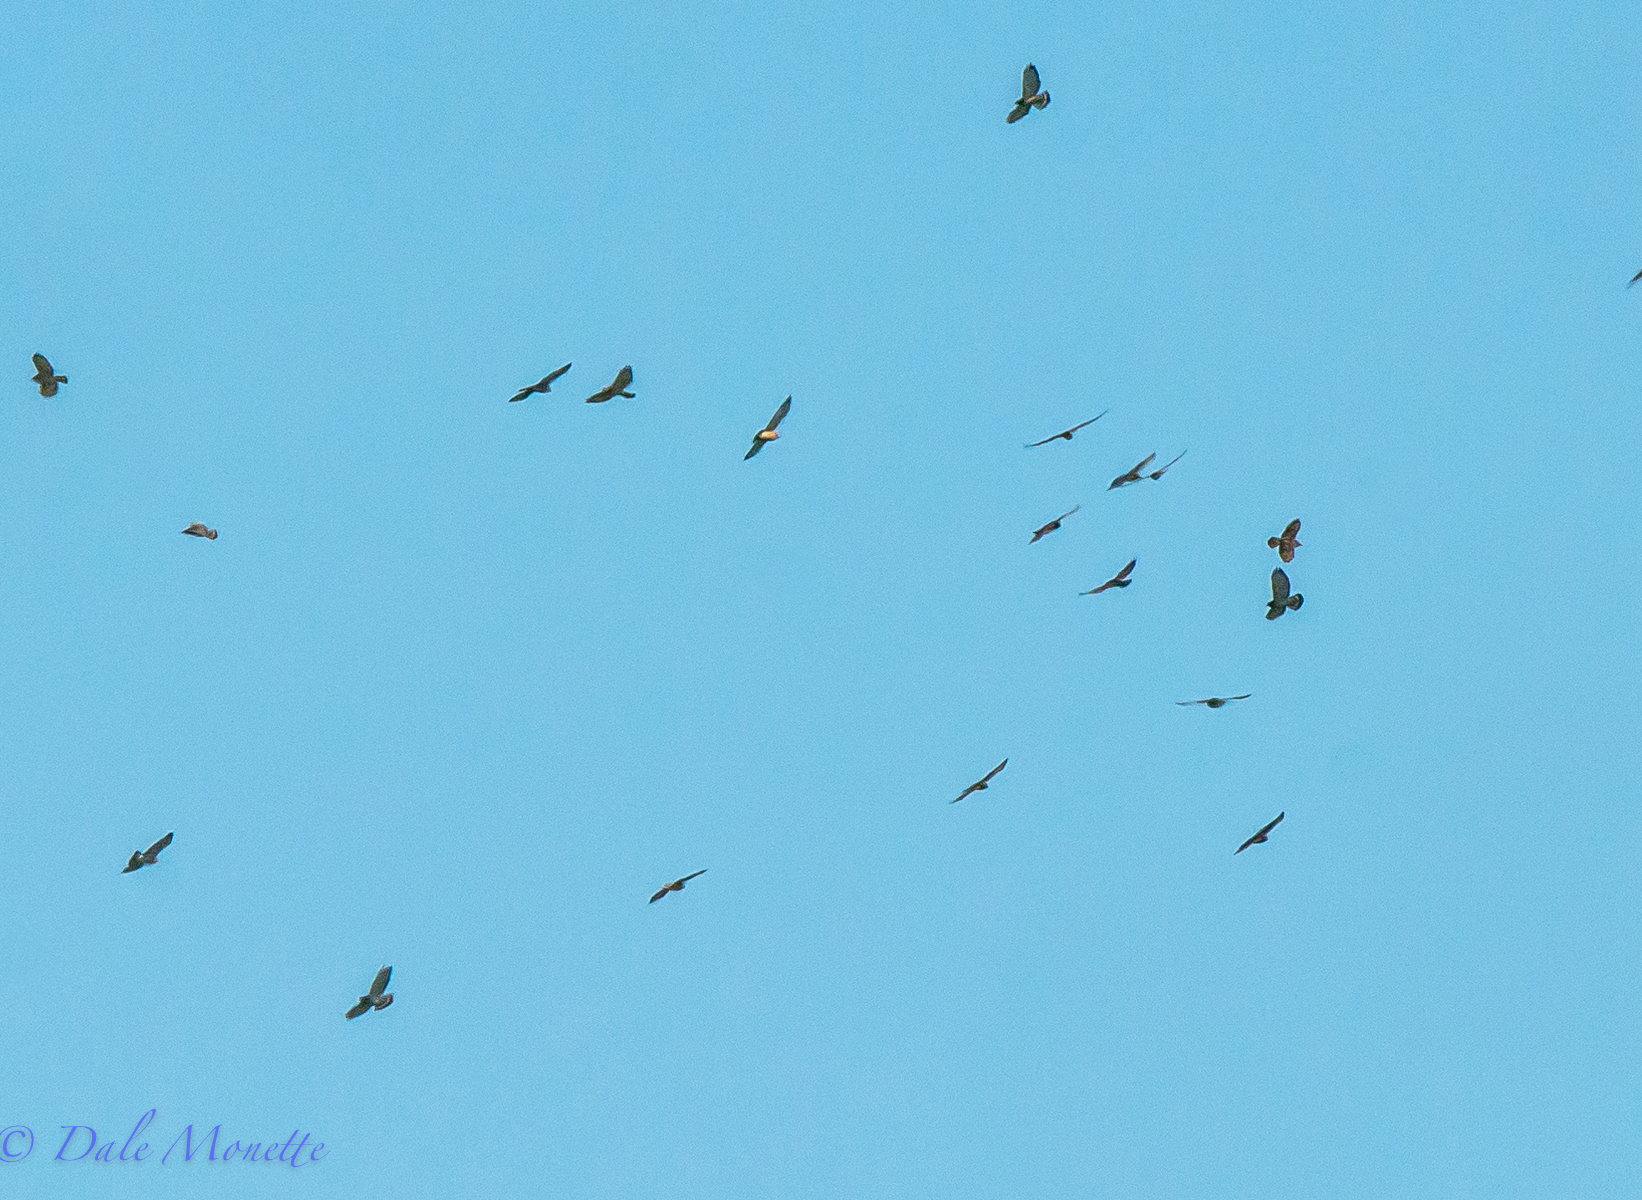 Fall hawk migration